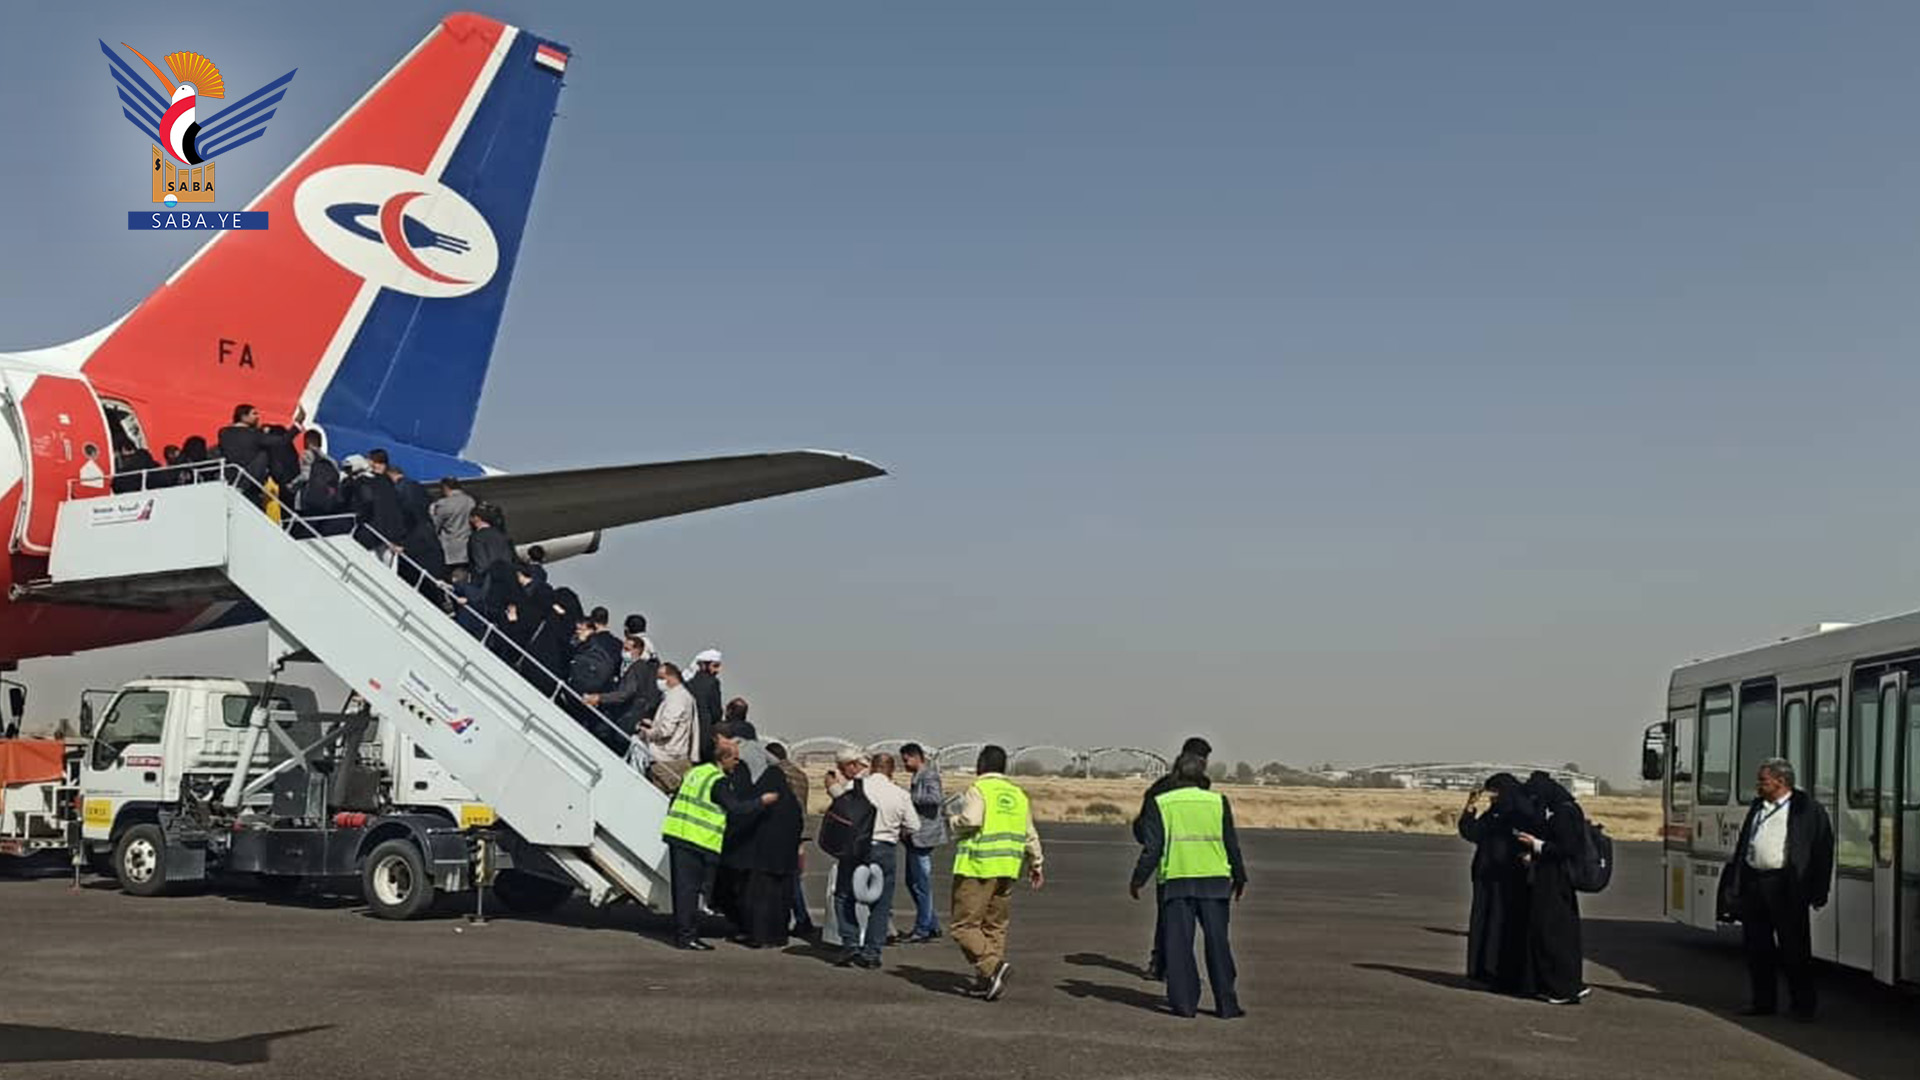  Le 4ème vol décolle de l'aéroport de Sana'a à destination d'Amman transportant 273 civils